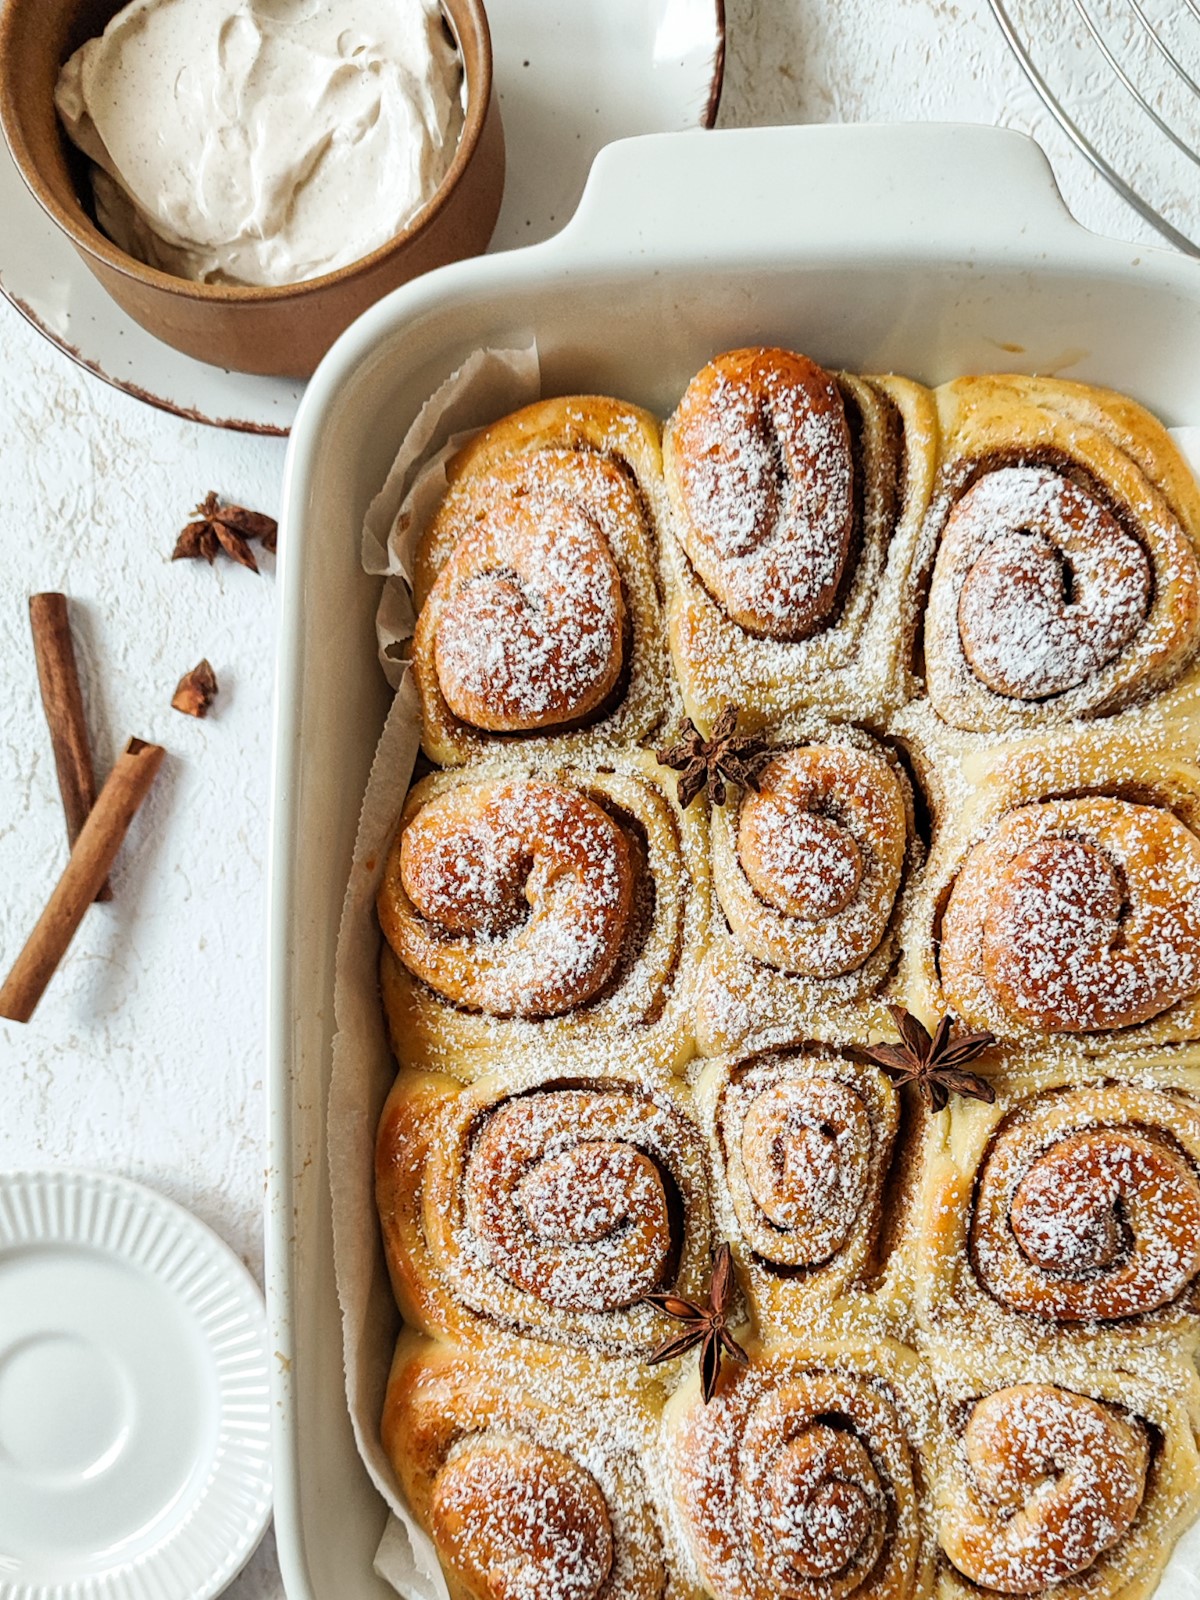 Milchbrot-Zimtschnecken - Milk bread cinnamon rolls in a white baking tray